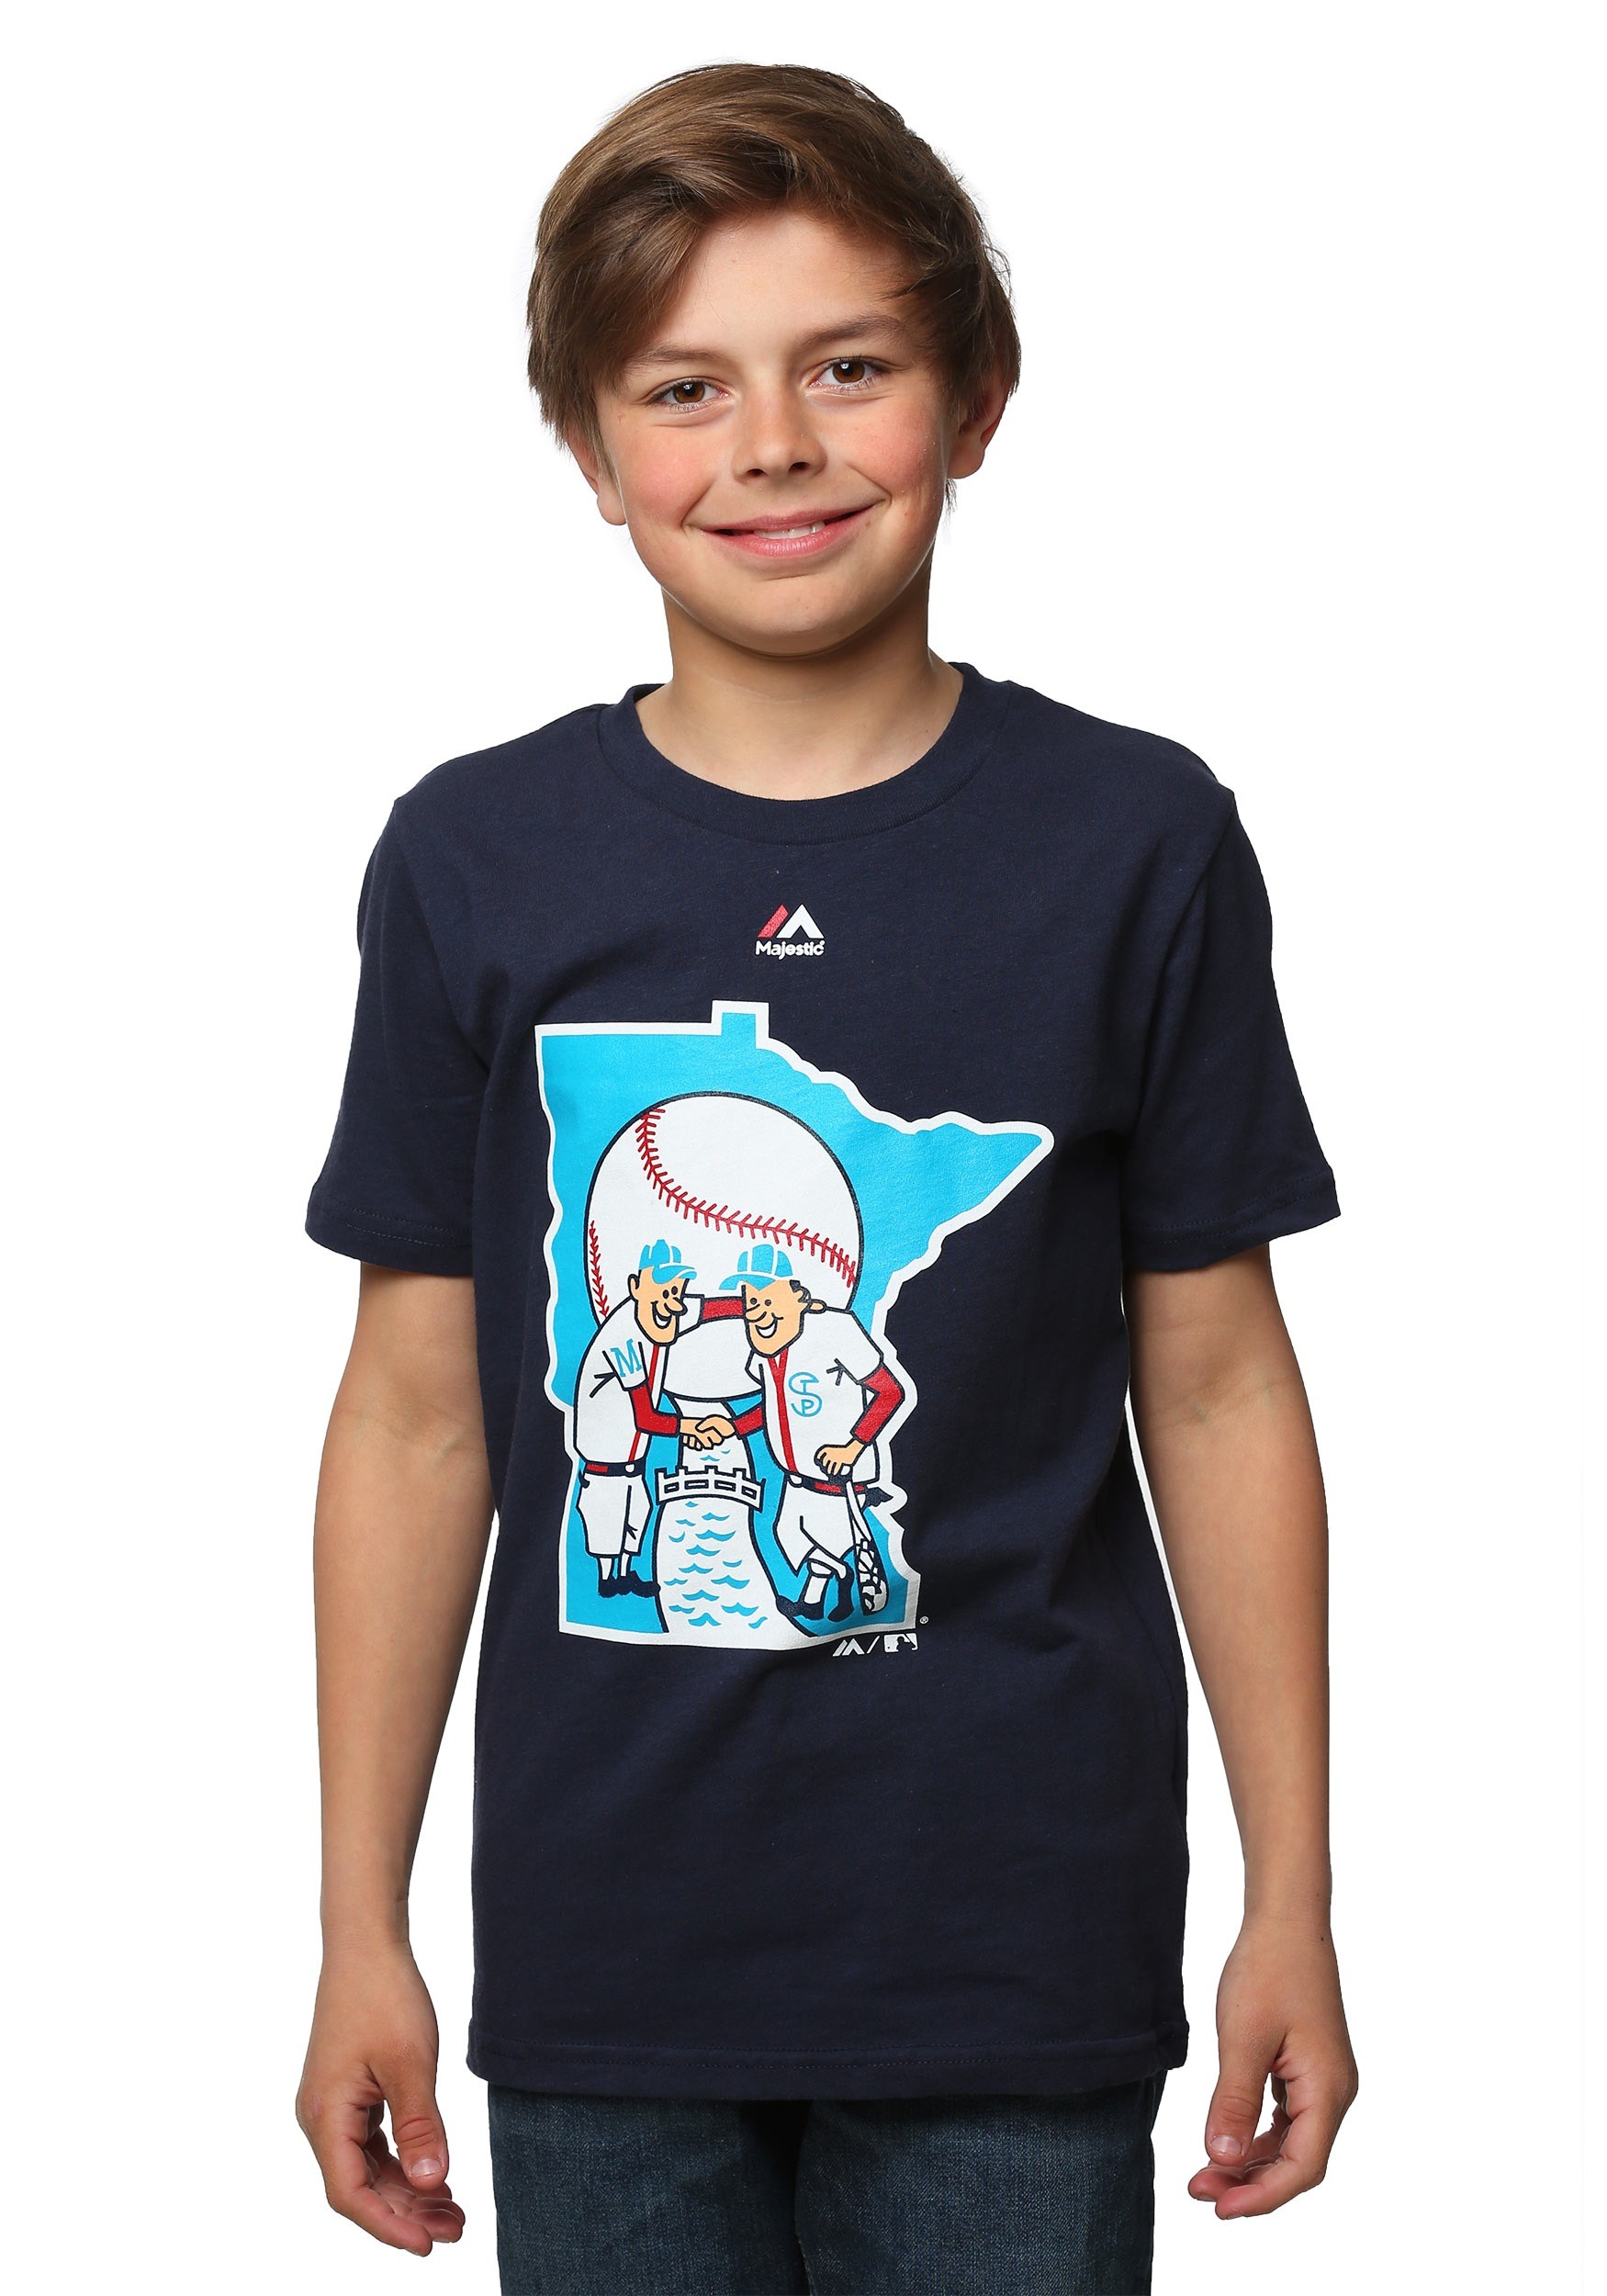 Minnesota Twins Cooperstown Official Logo Kids T-Shirt